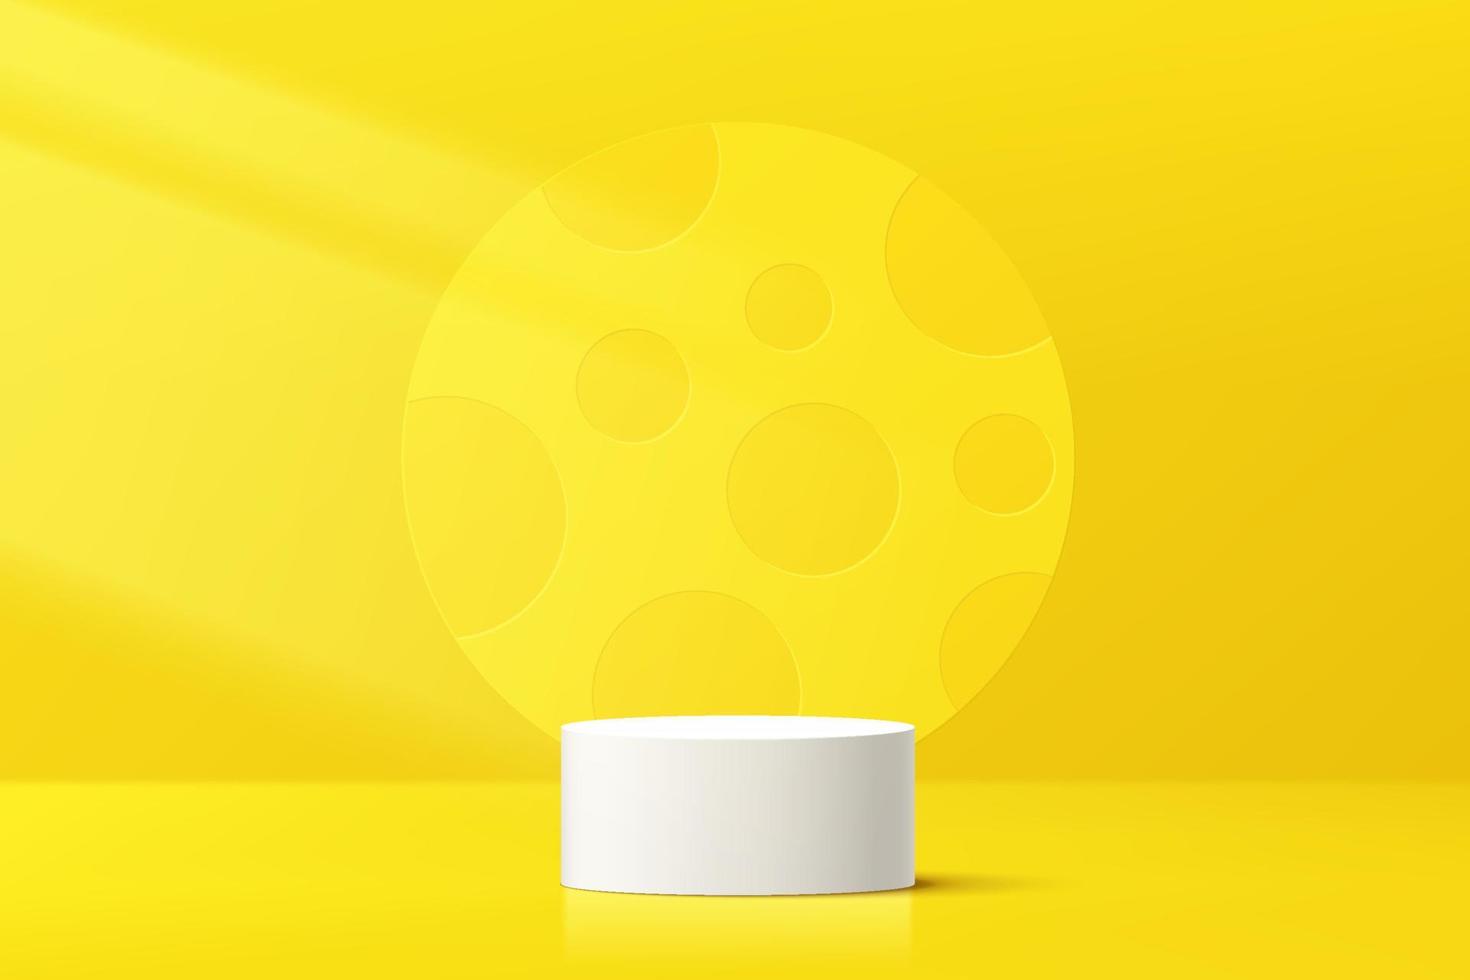 abstrakt 3d vit cylinder piedestal podium med gul cirkel form bakgrund i prick textur. pastellgul minimal väggscen för produktpresentation. vektor rendering geometrisk plattform.